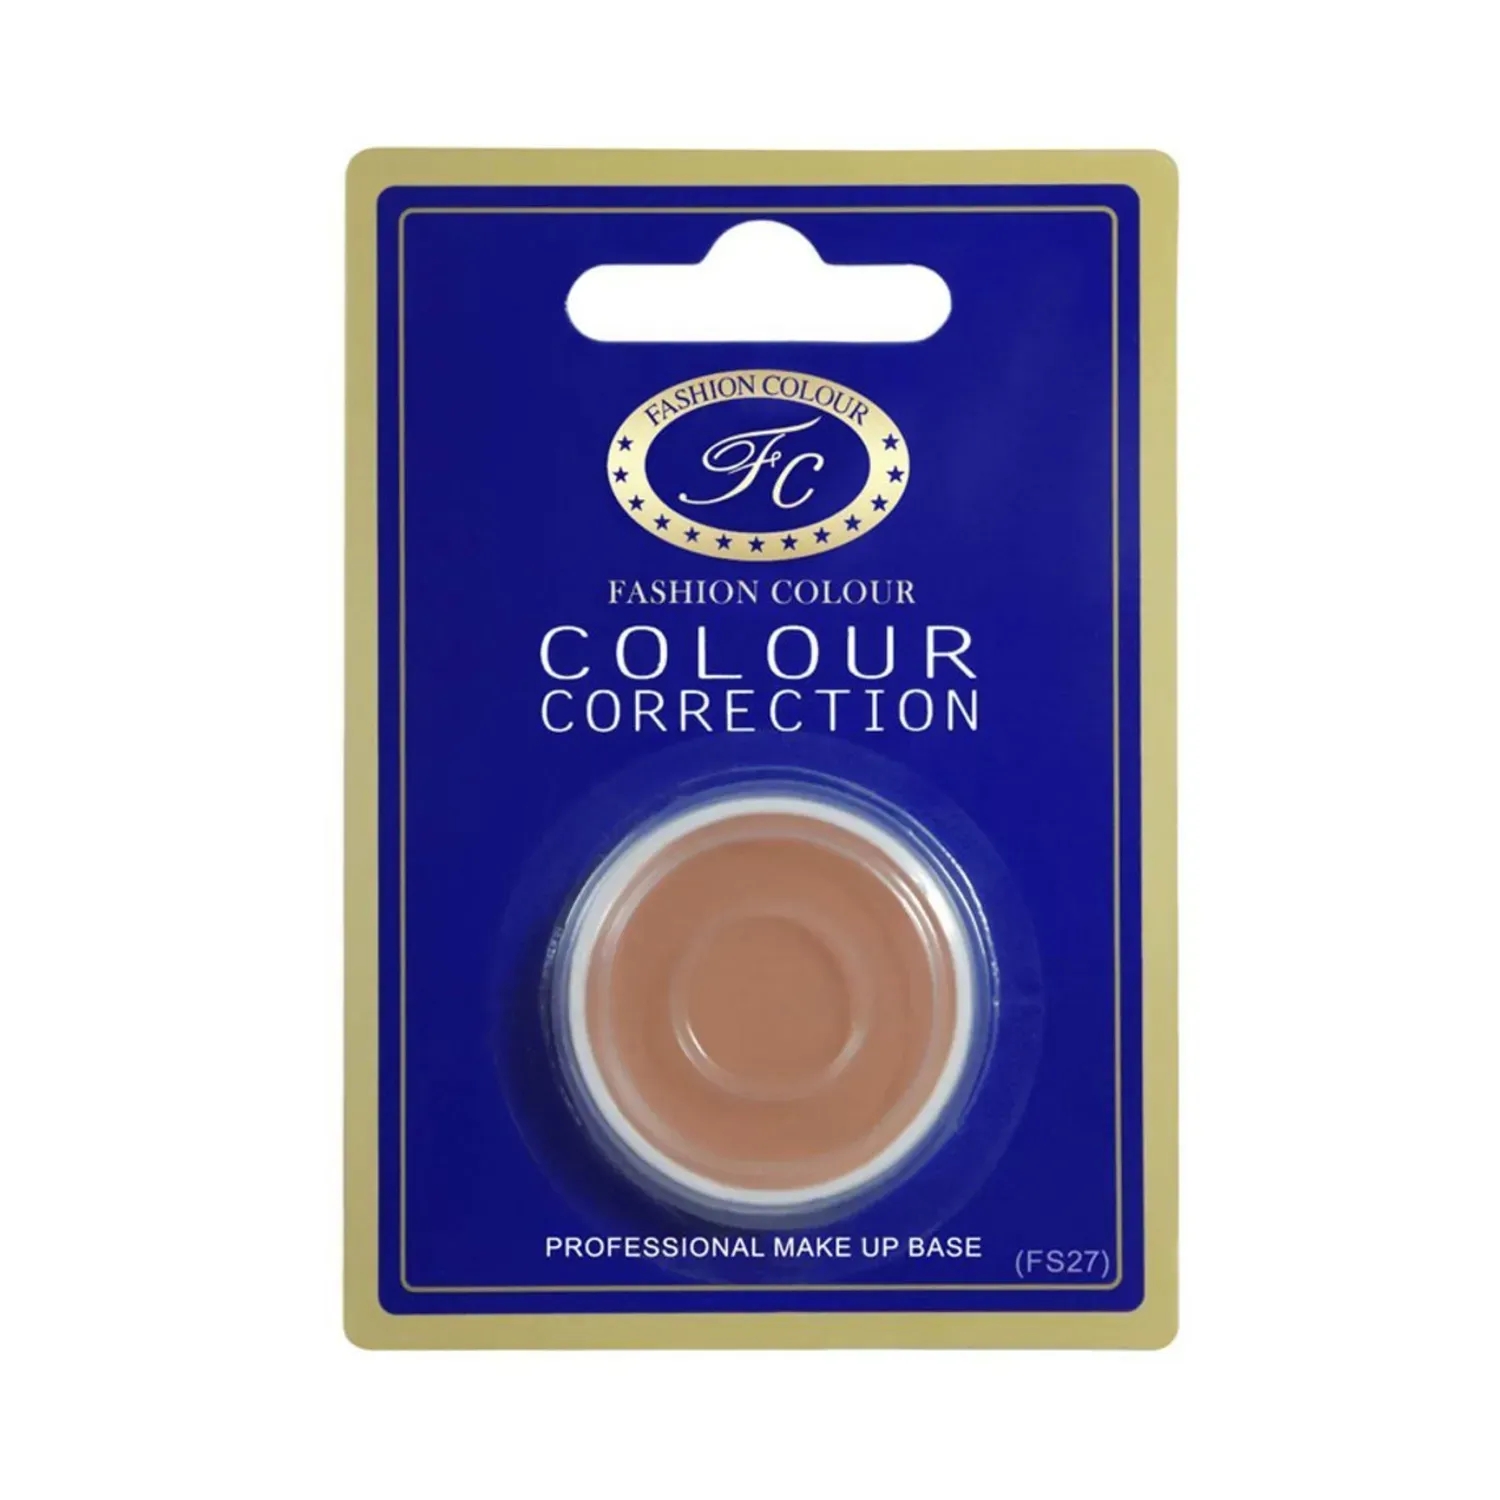 Fashion Colour | Fashion Colour Single Packing Colour Correction Makeup Base Concealer - FS28 (3.5g)